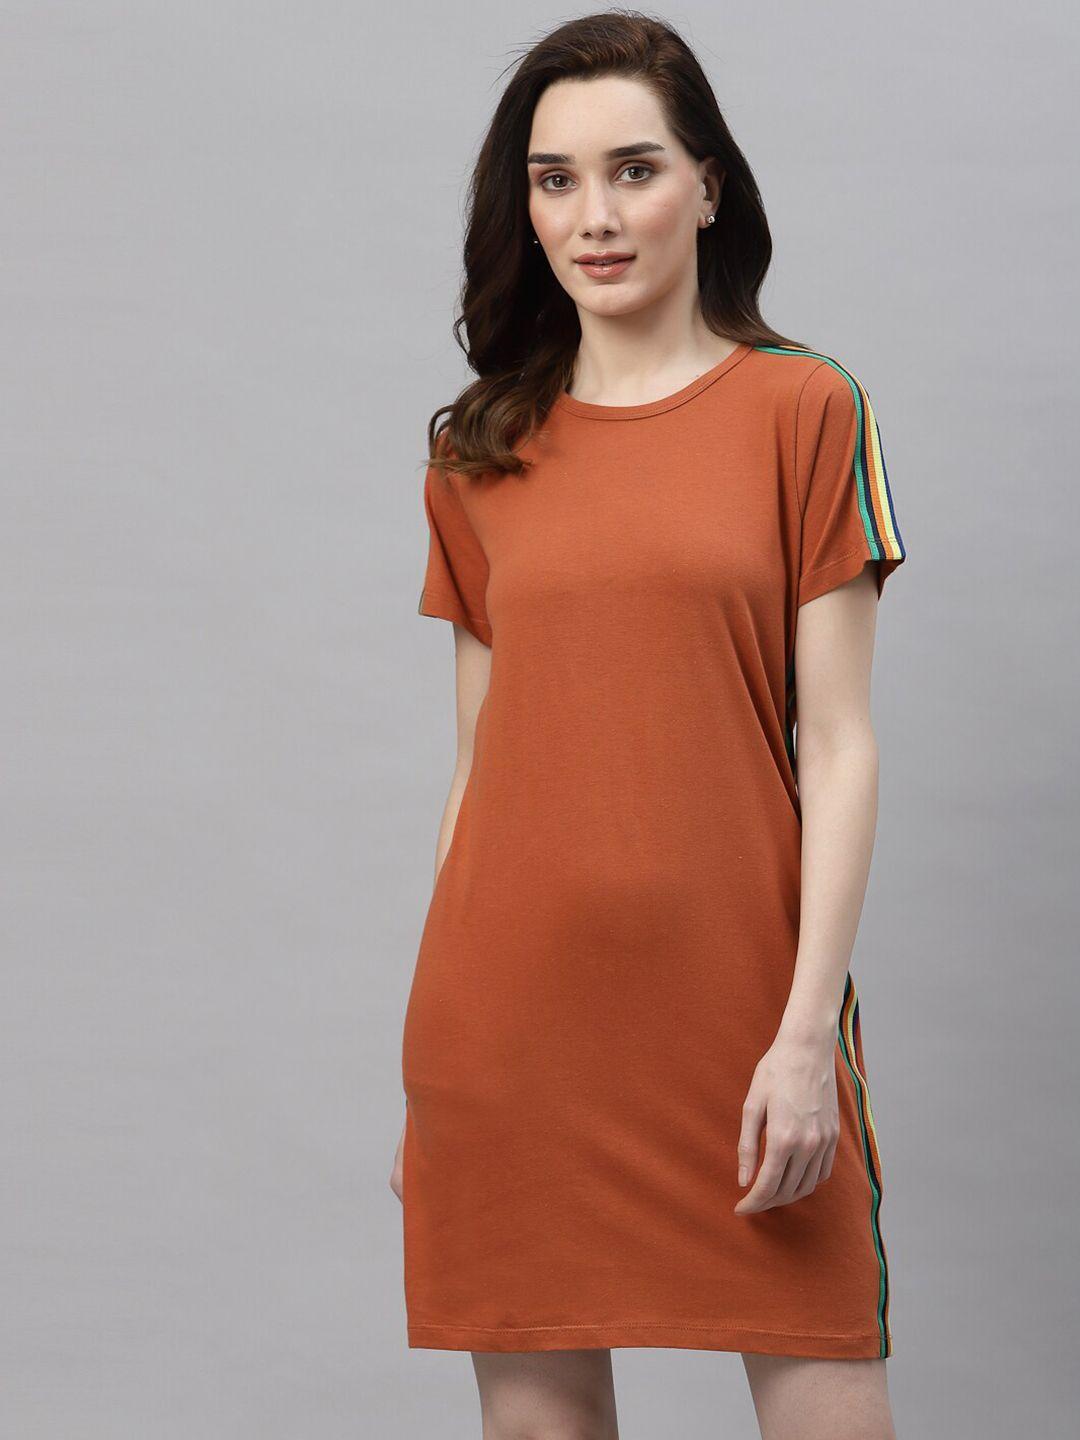 rigo orange t-shirt dress